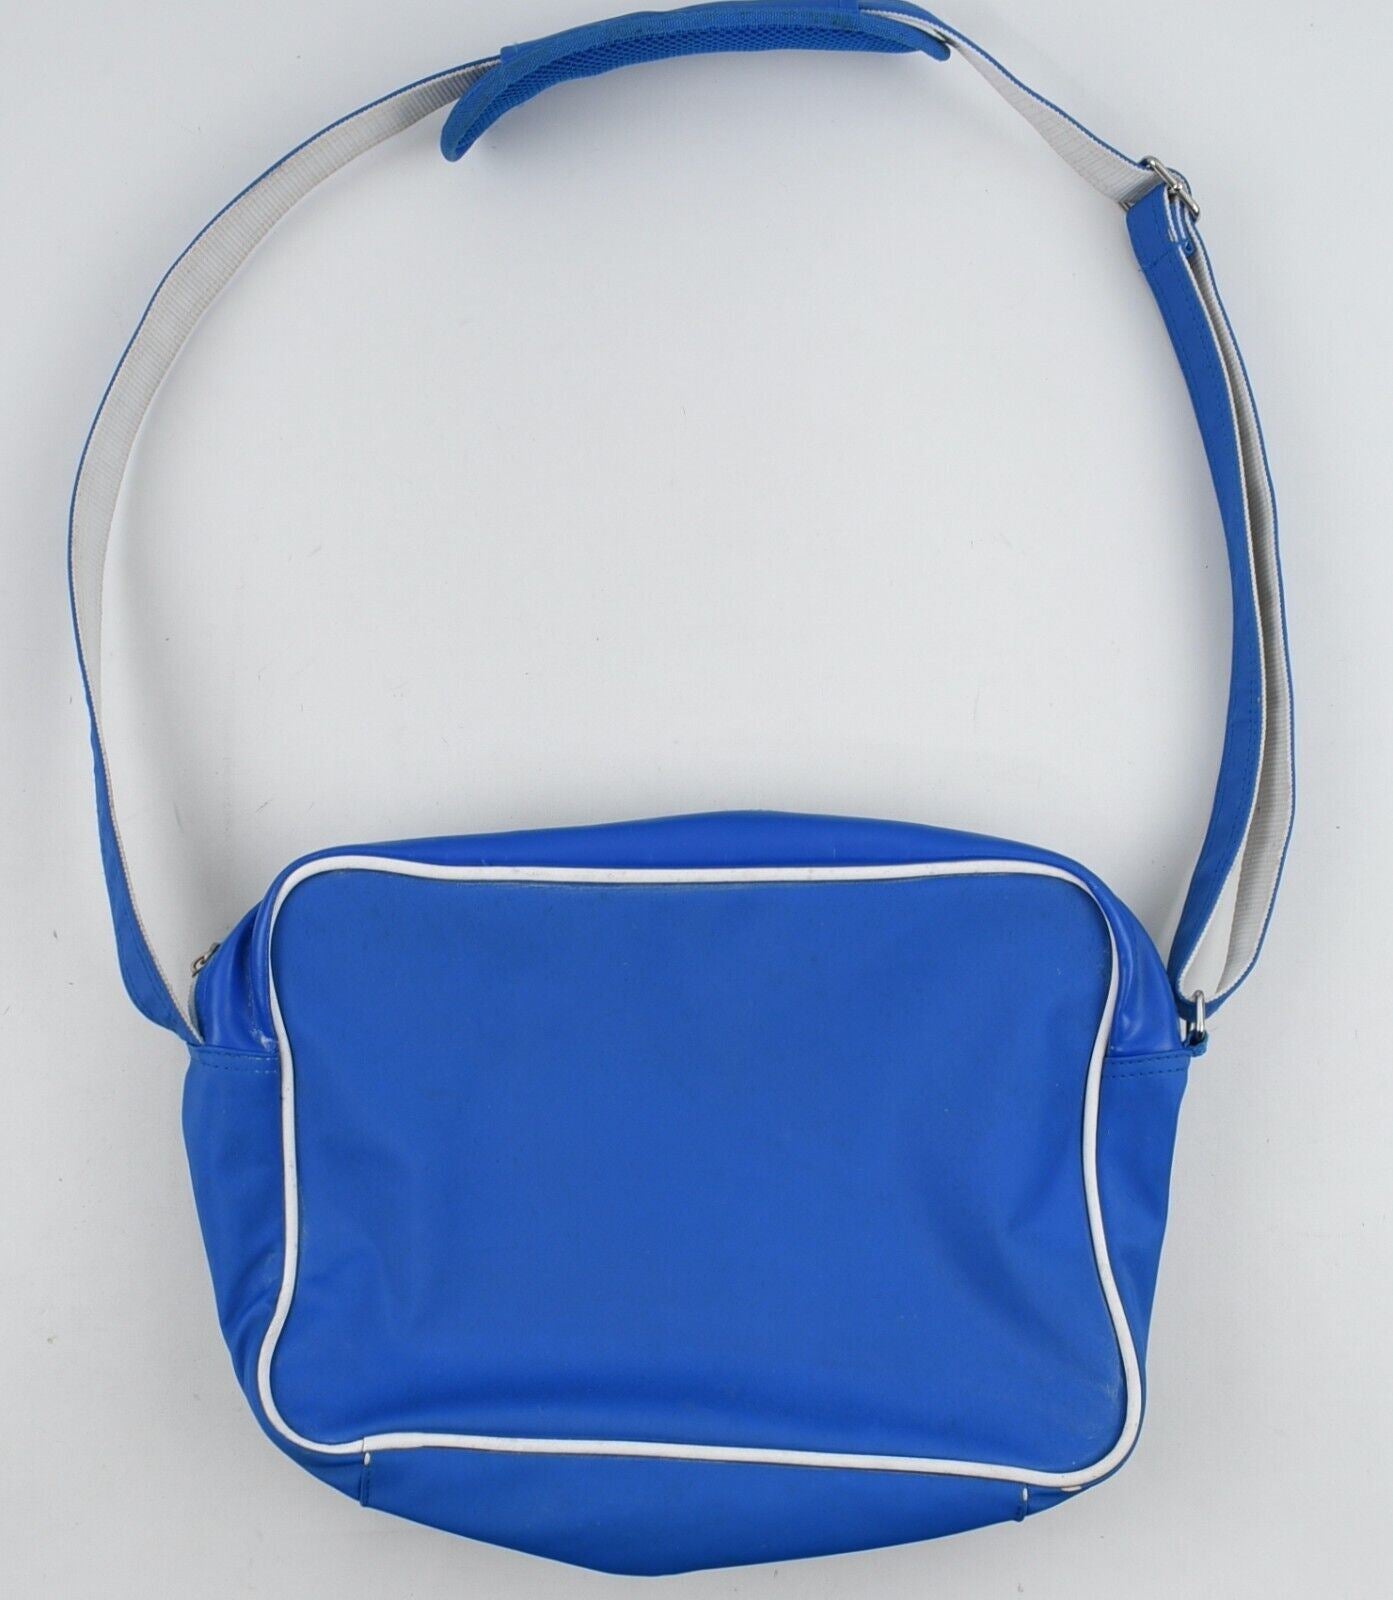 ADIDAS Mens Womens Messenger Crossbody Bag, Blue/White